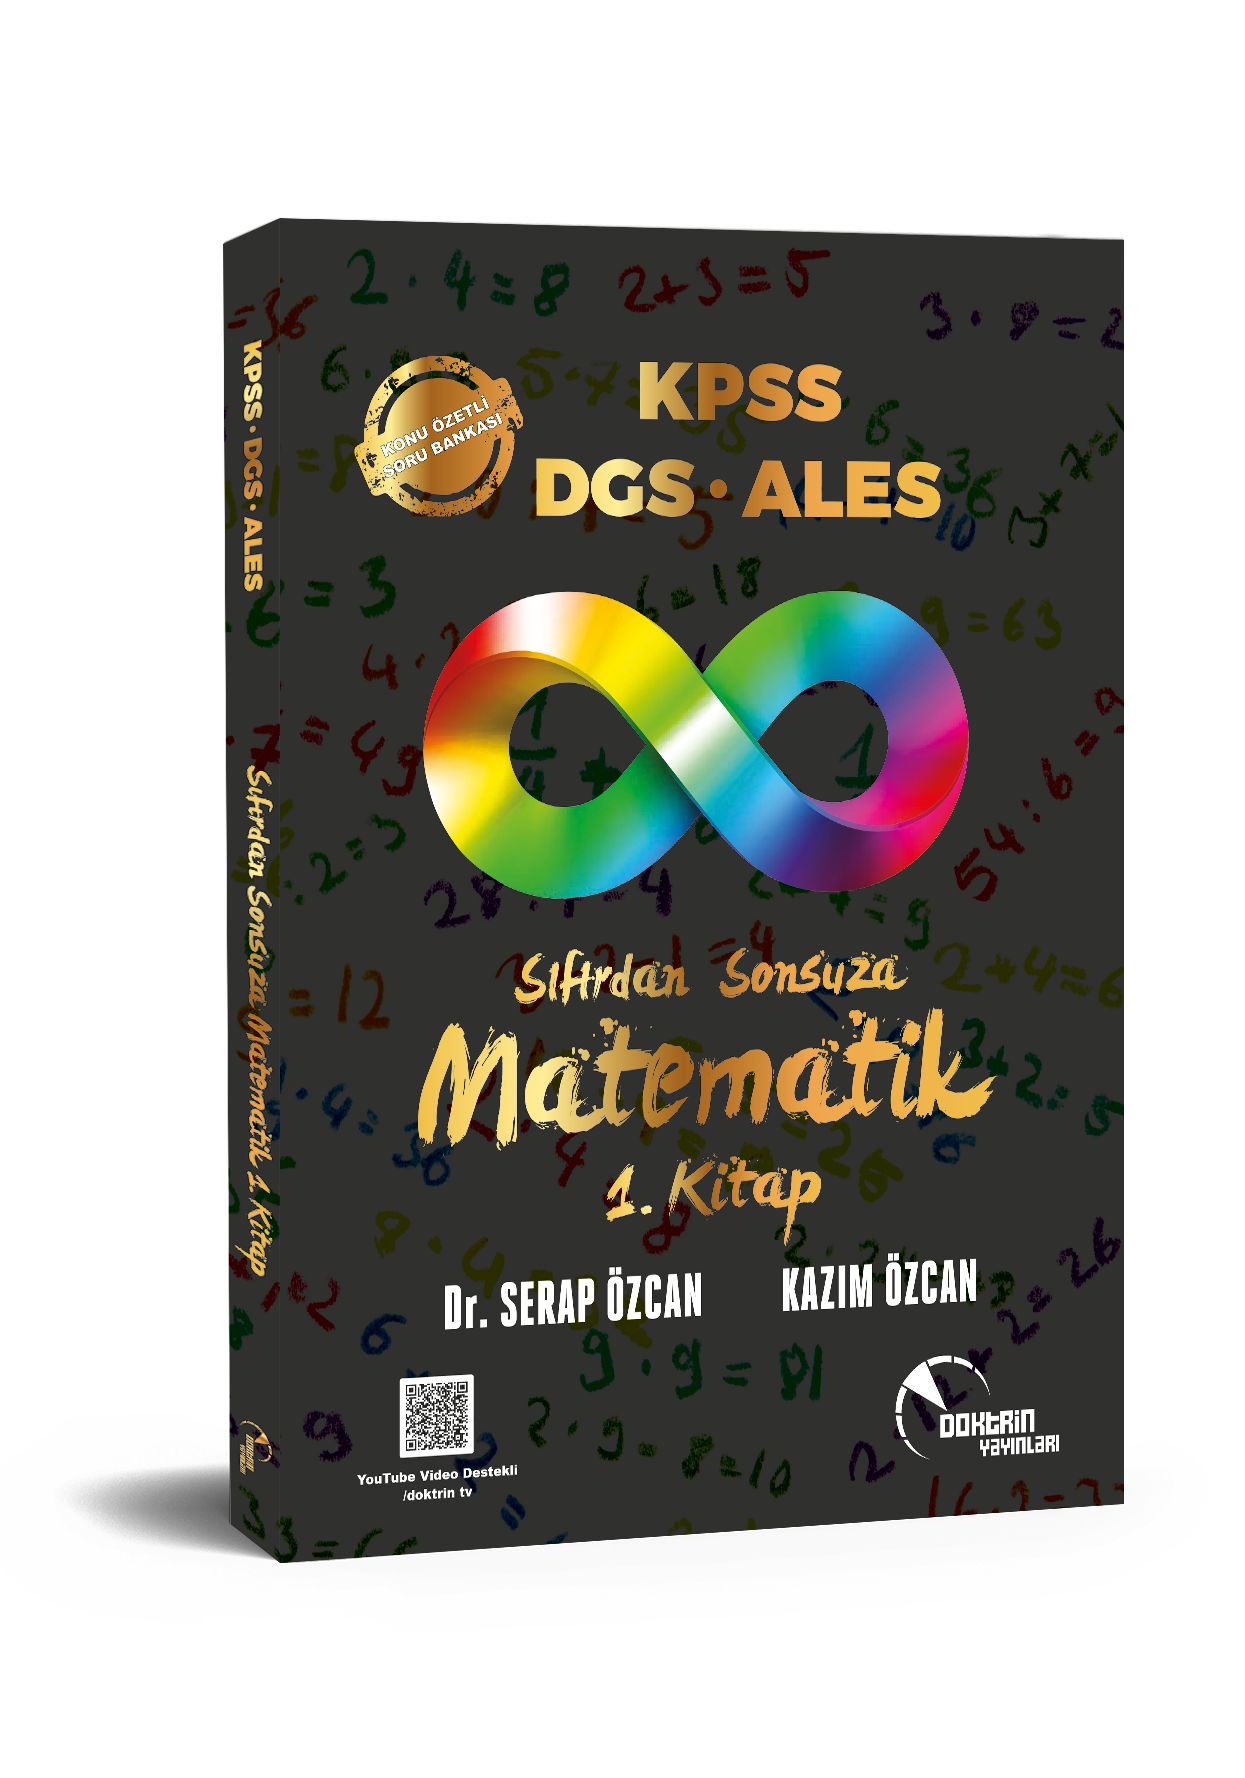 KPSS / DGS / ALES Sıfırdan Sonsuza Matematik (1.Kitap) Konu Özetli Soru Bankası